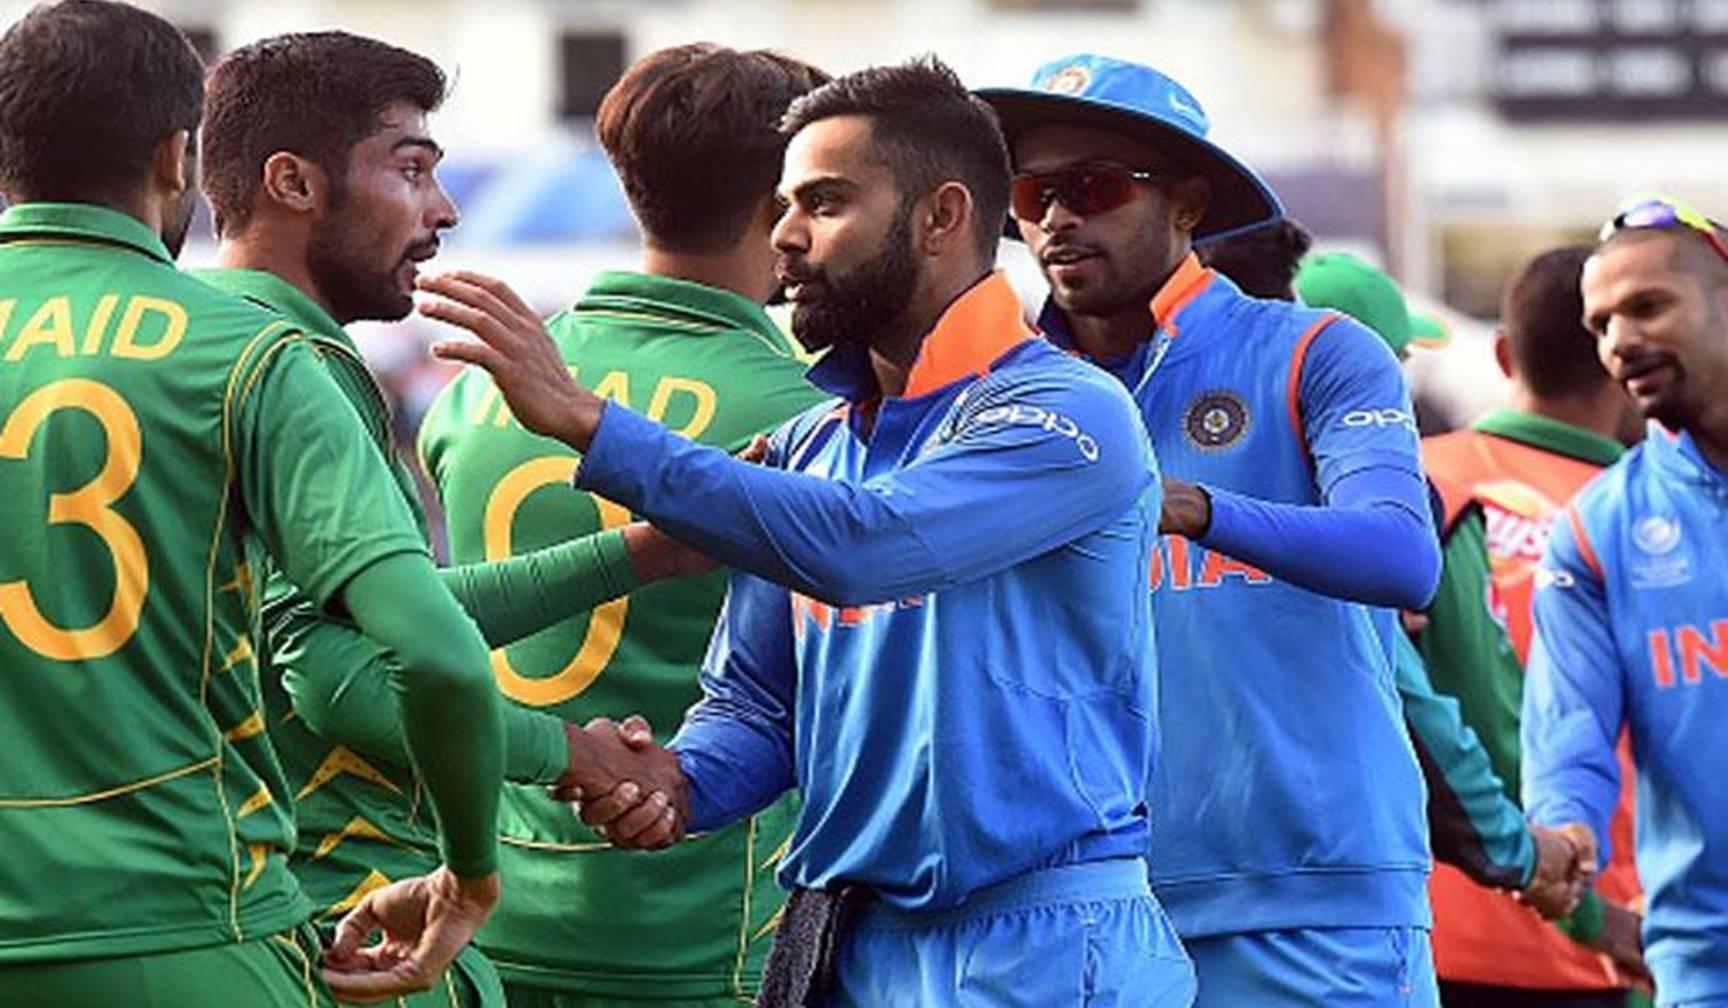 दुखद और बुरी खबर आई, 19 सितंबर को भारत और पाकिस्तान का एशिया कप में मैच हुआ रद्द !